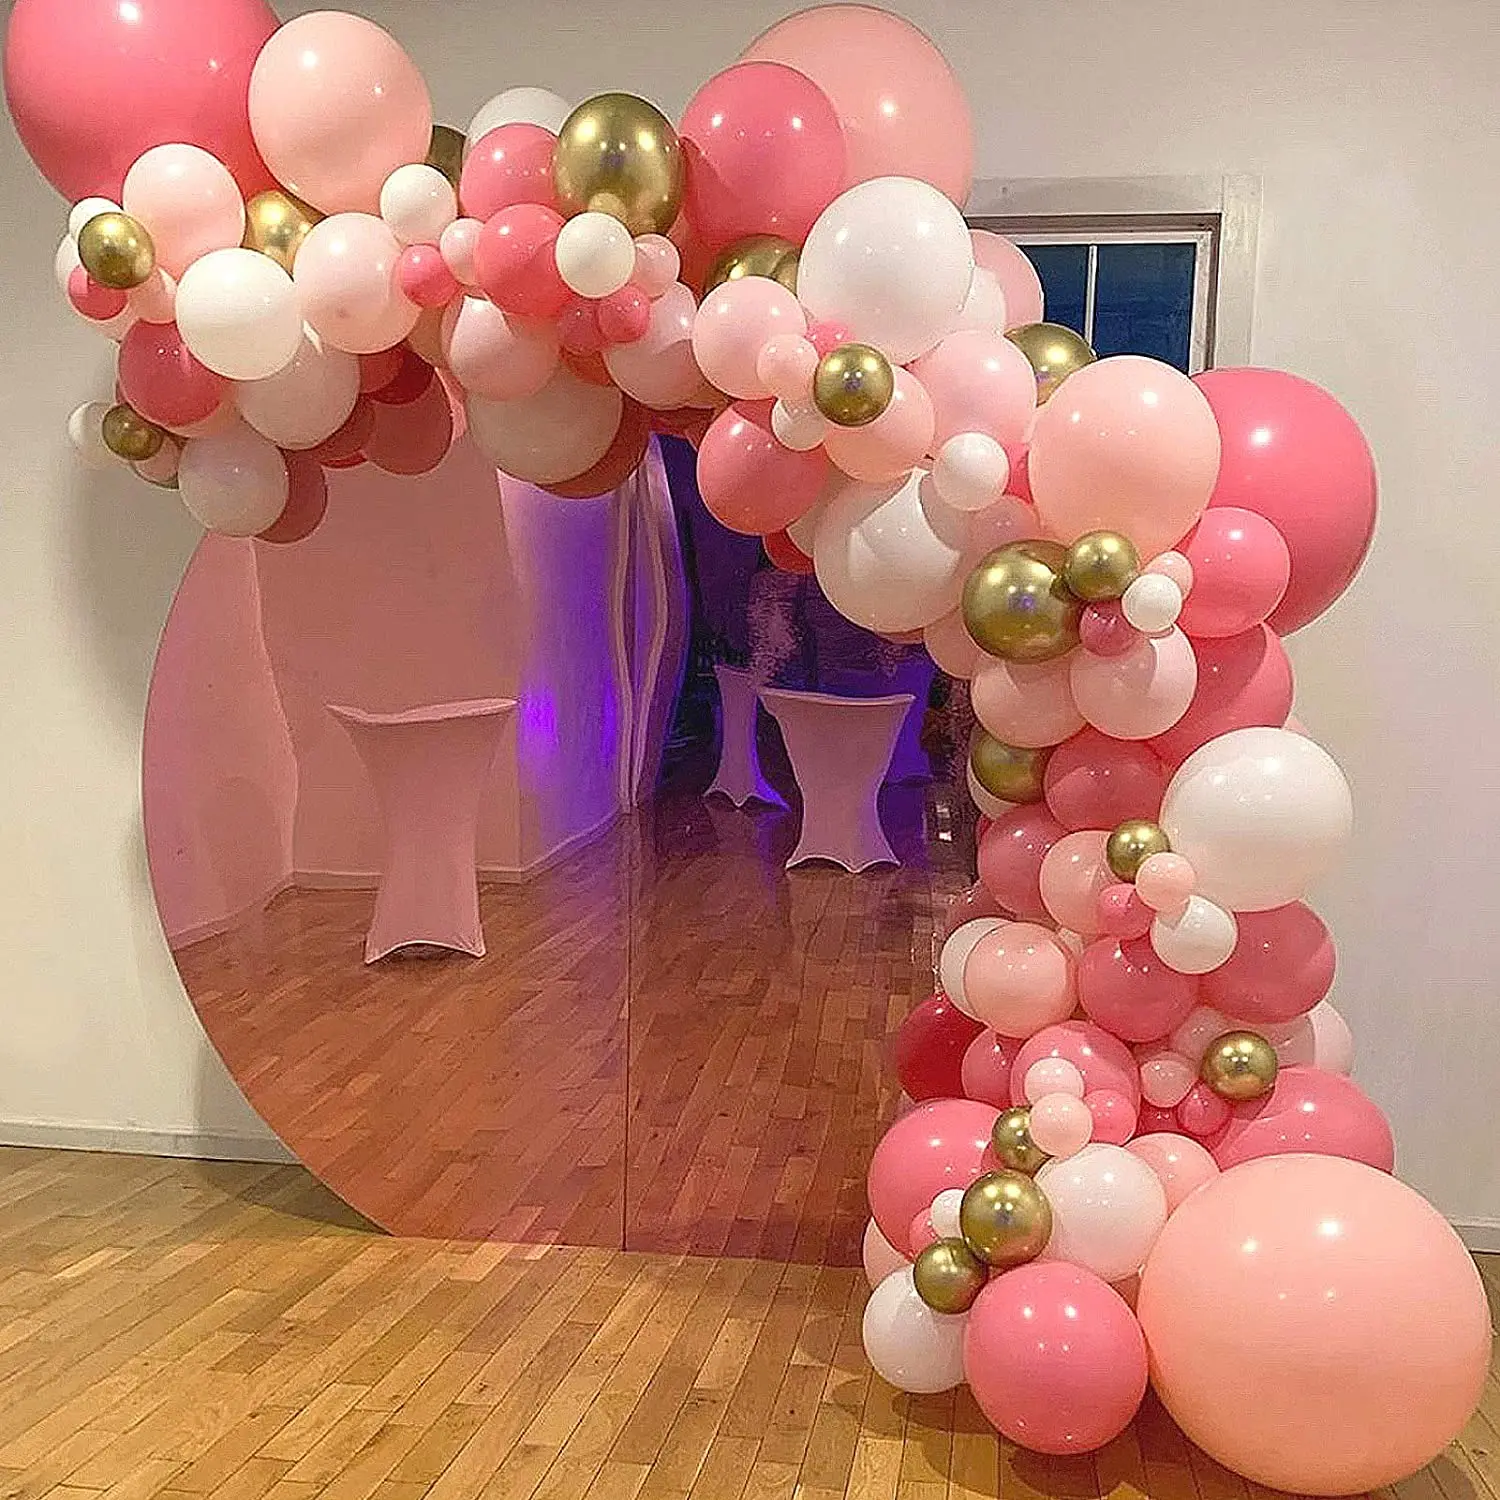 Kit de arco de guirnalda de globos rosados, 130 piezas de arco de globos de  color rosa intenso dorado y rosa intenso, hojas de palma tropicales